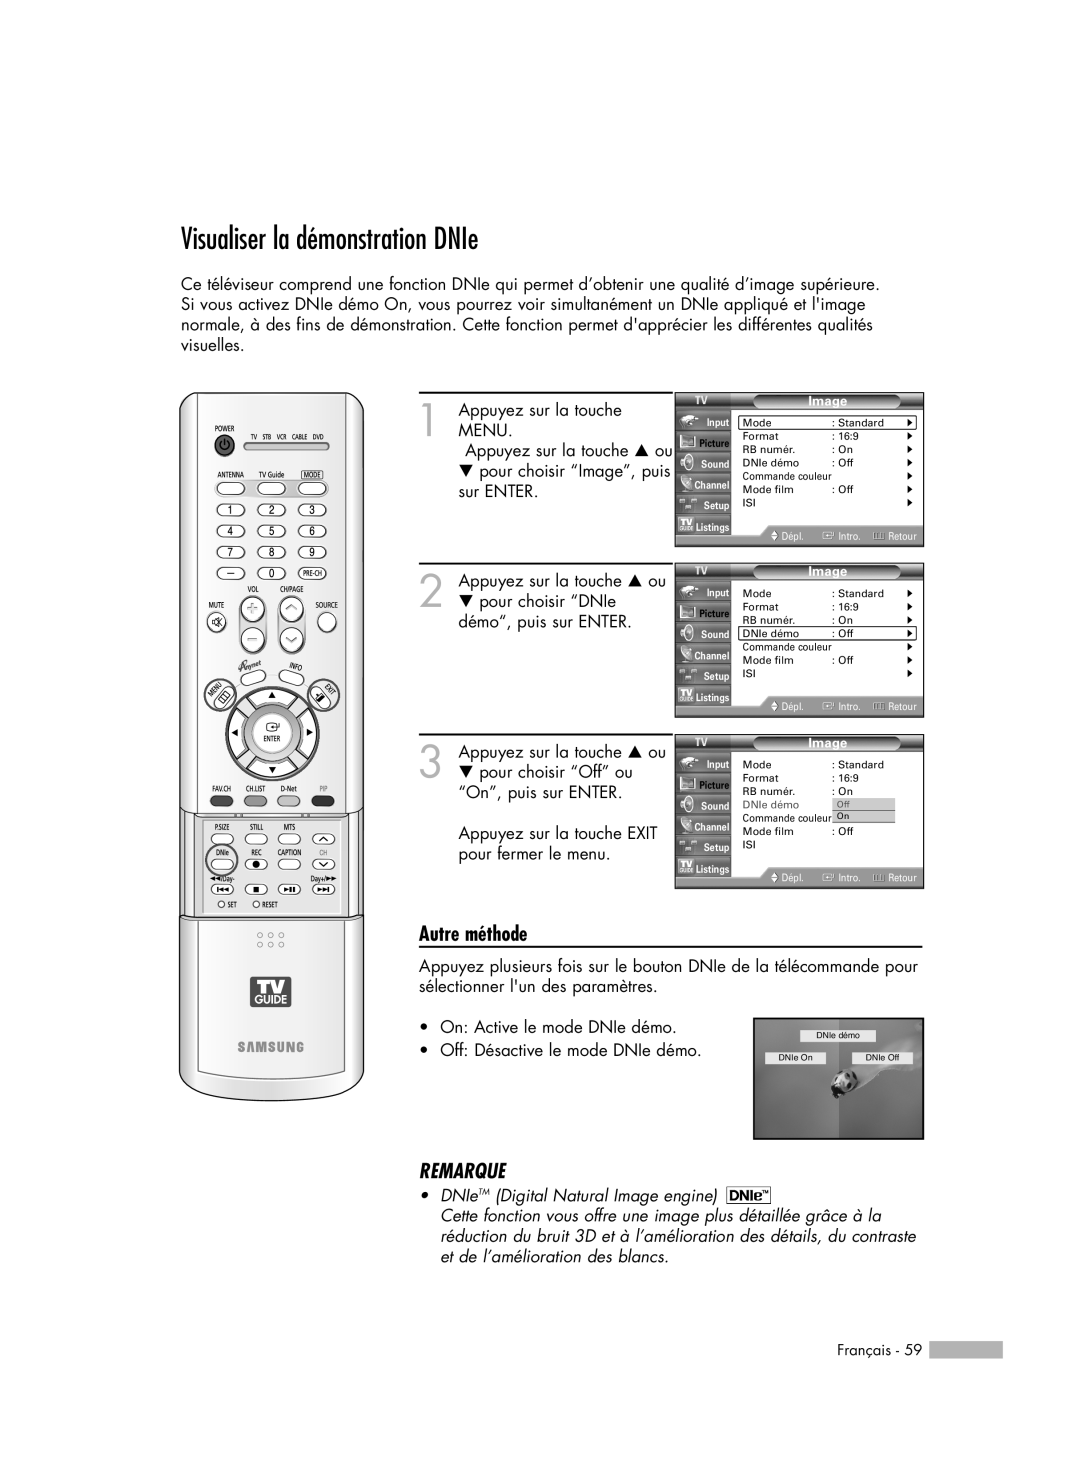 Samsung HL-R7178W manual Visualiser la démonstration DNIe, Autre méthode, Remarque, DNIeTM Digital Natural Image engine 